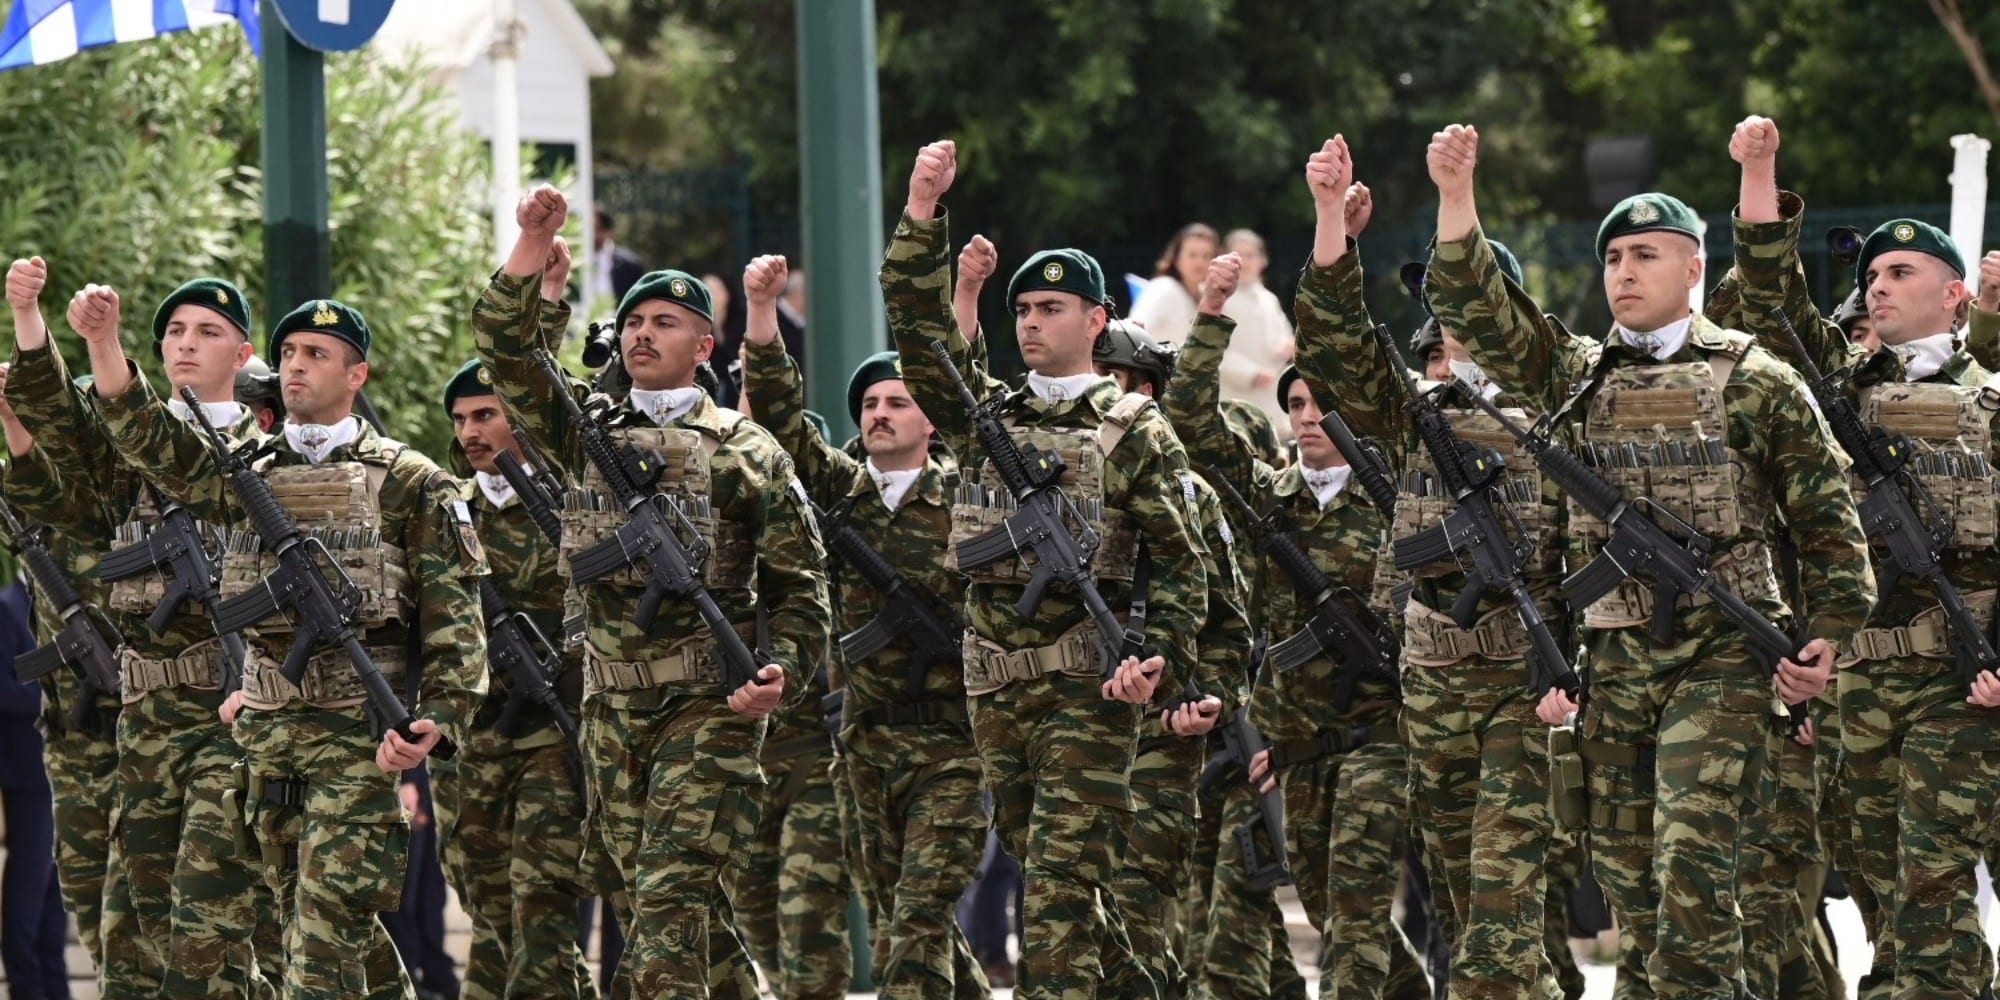 Εικόνα από την στρατιωτική παρέλαση στο Σύνταγμα